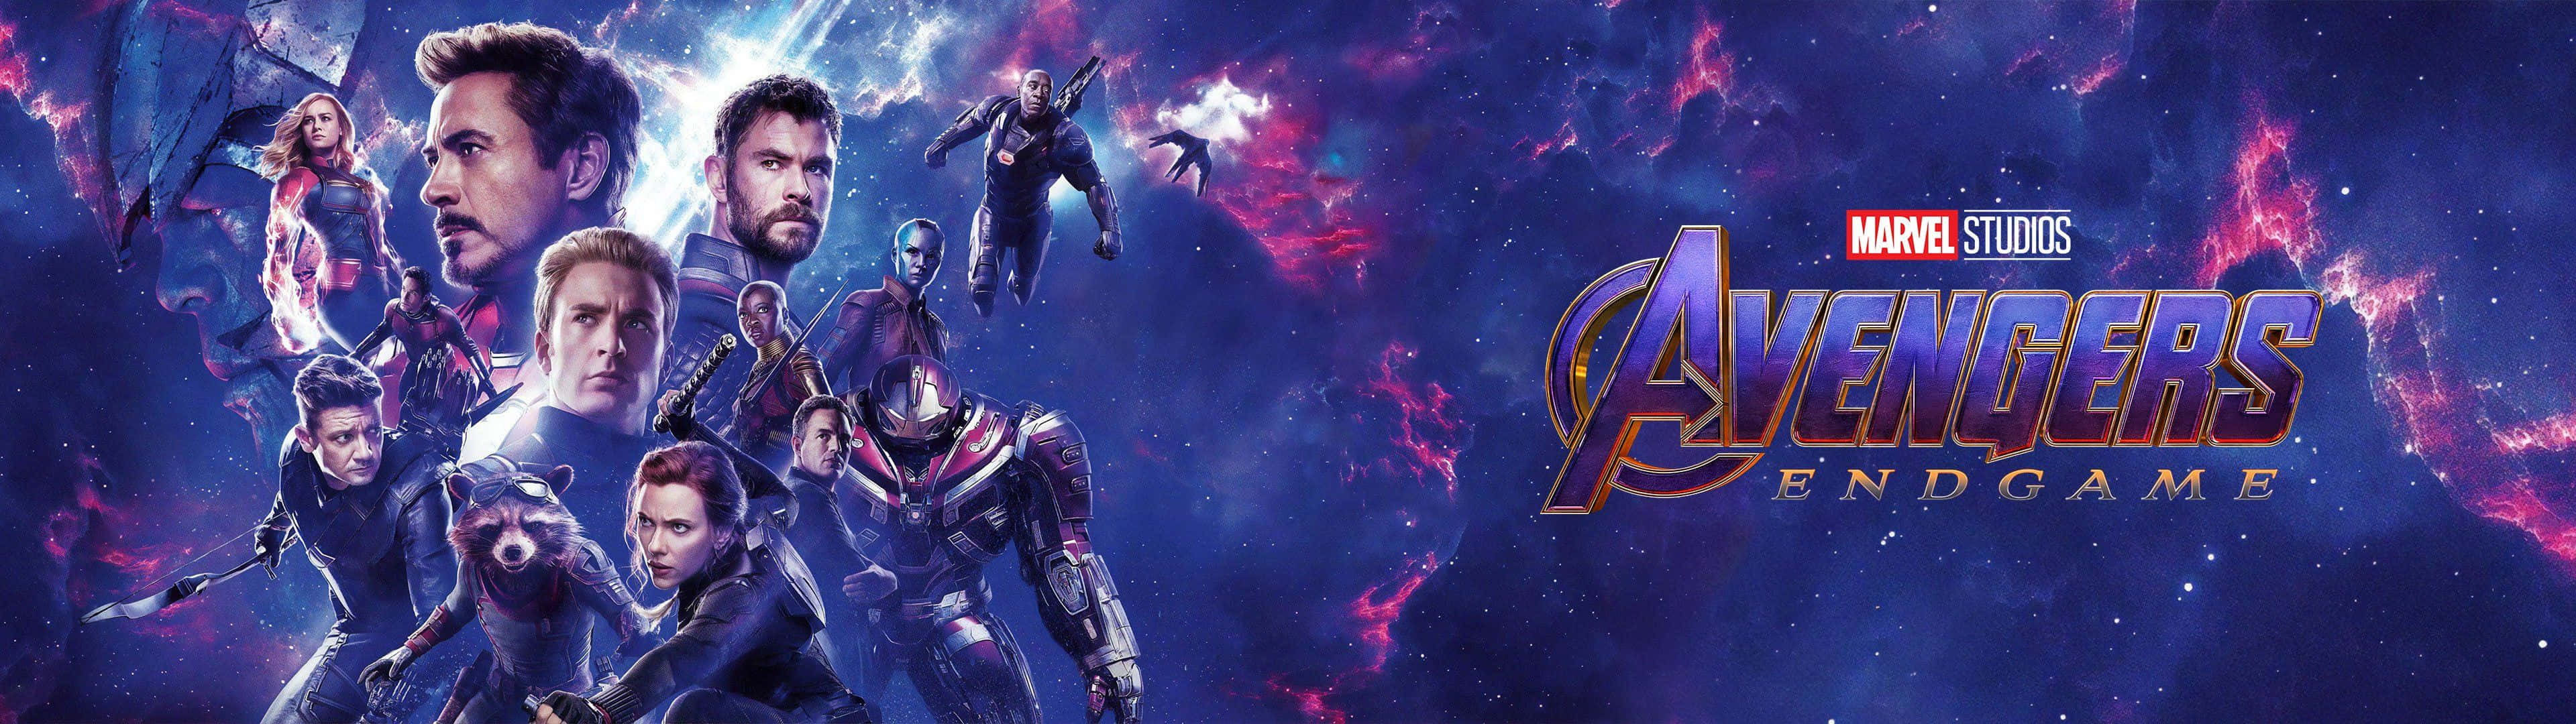 Feel the power of Marvel's Avengers on Dual Screen Wallpaper